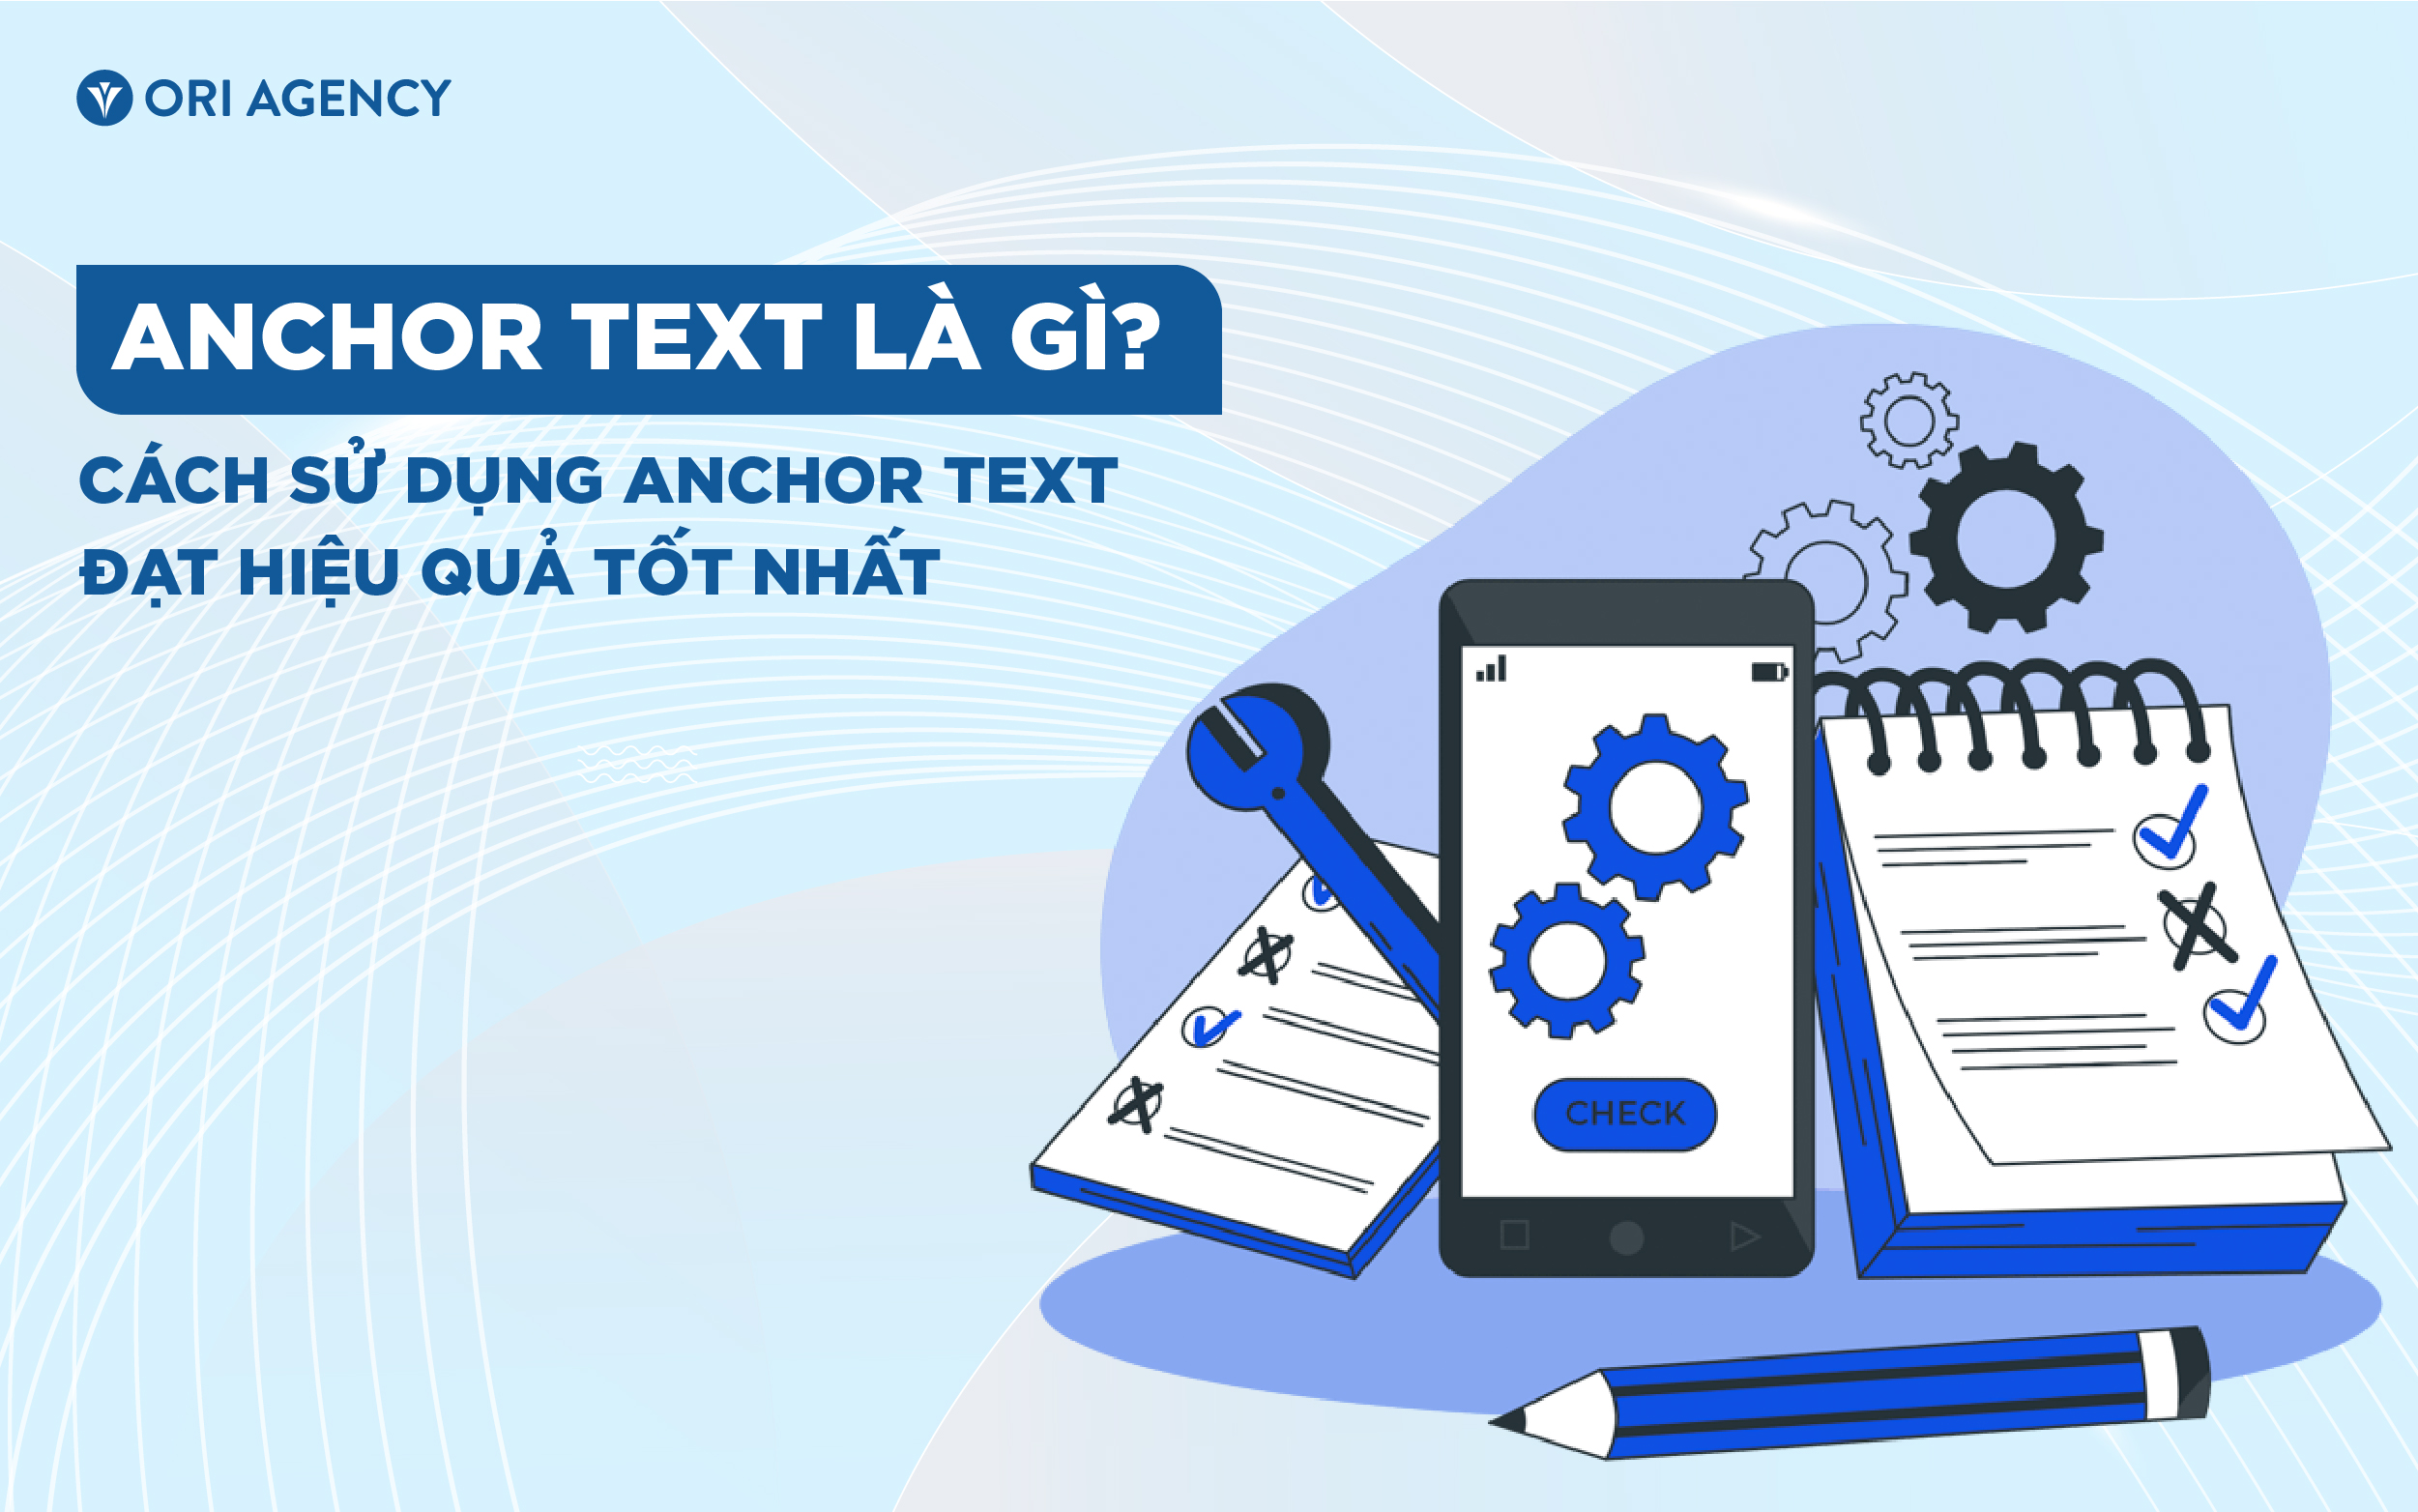 Anchor Text là gì? Cách sử dụng Anchor Text đạt hiệu quả tốt nhất